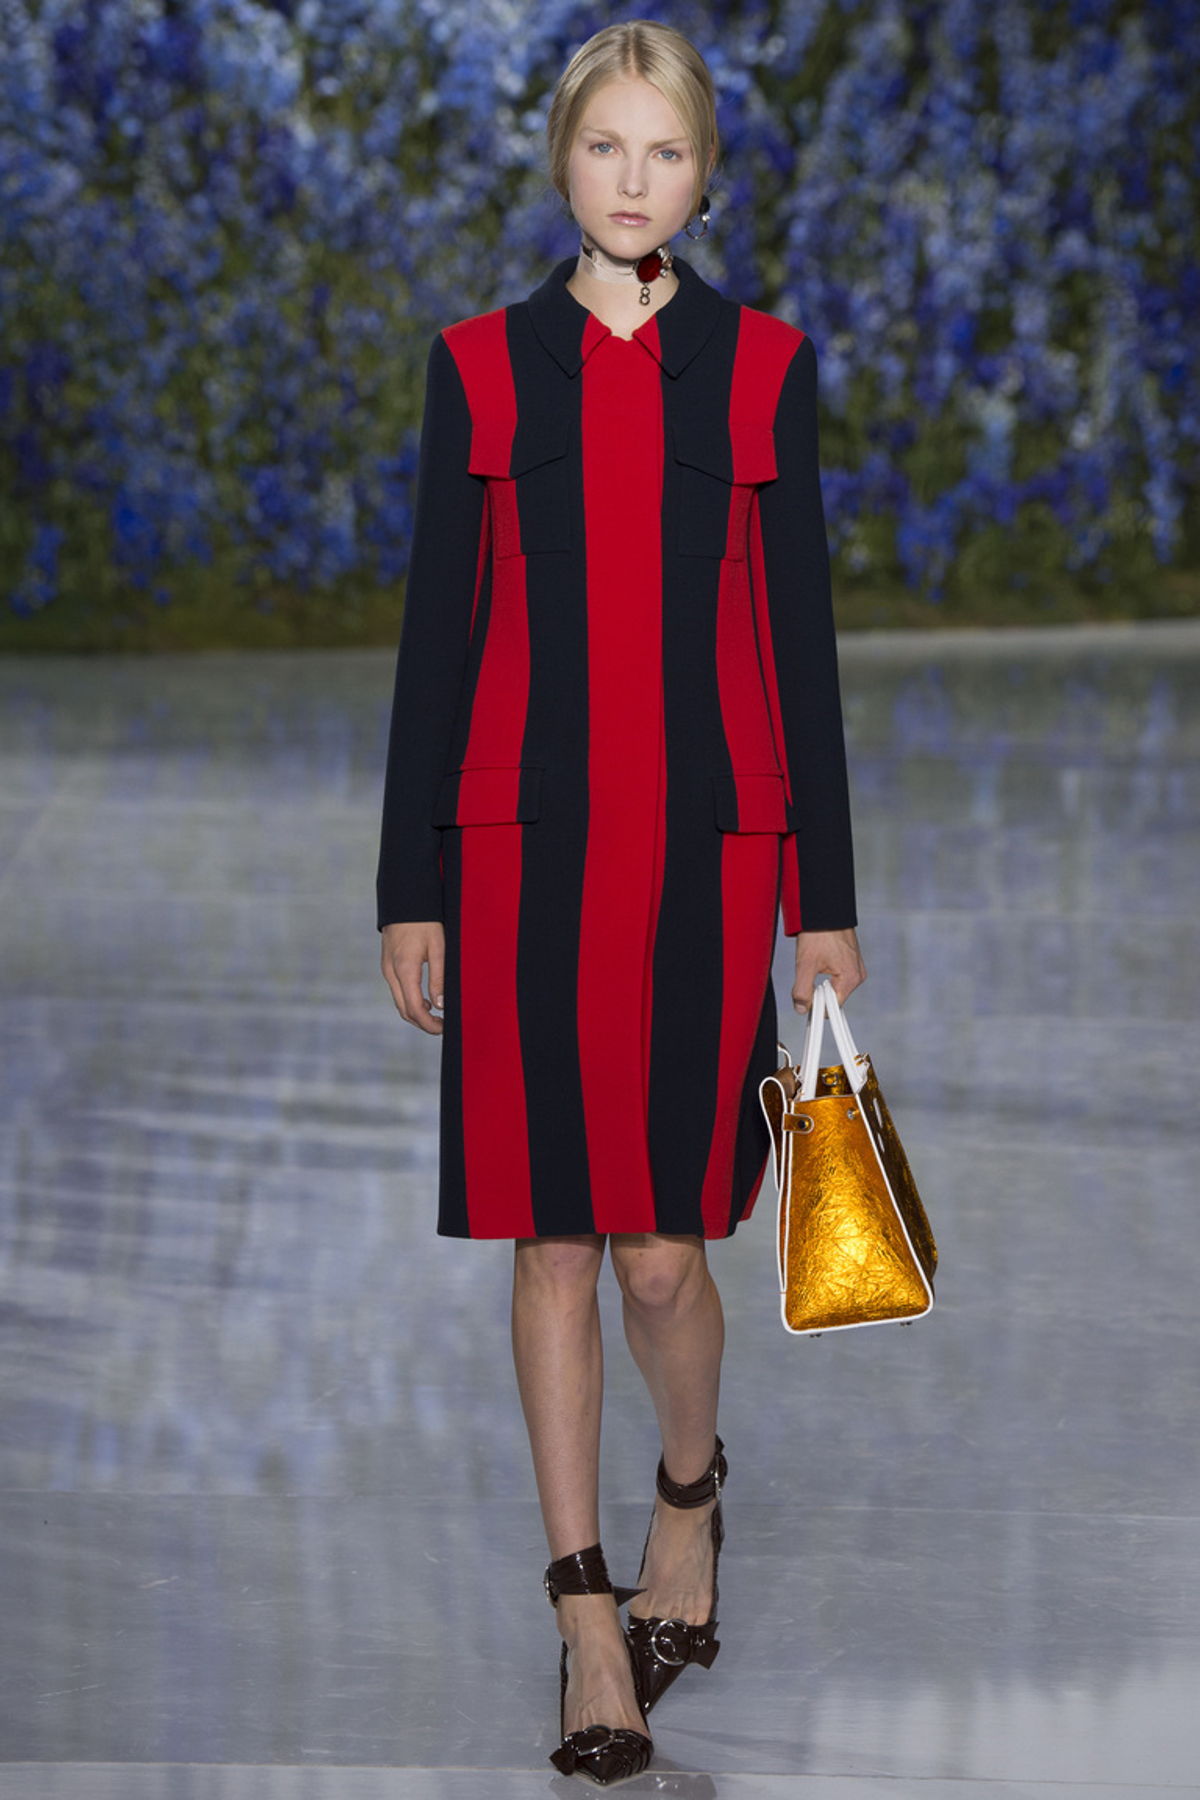 Черное платье с вертикальными красными полосками из коллекции Christian Dior.